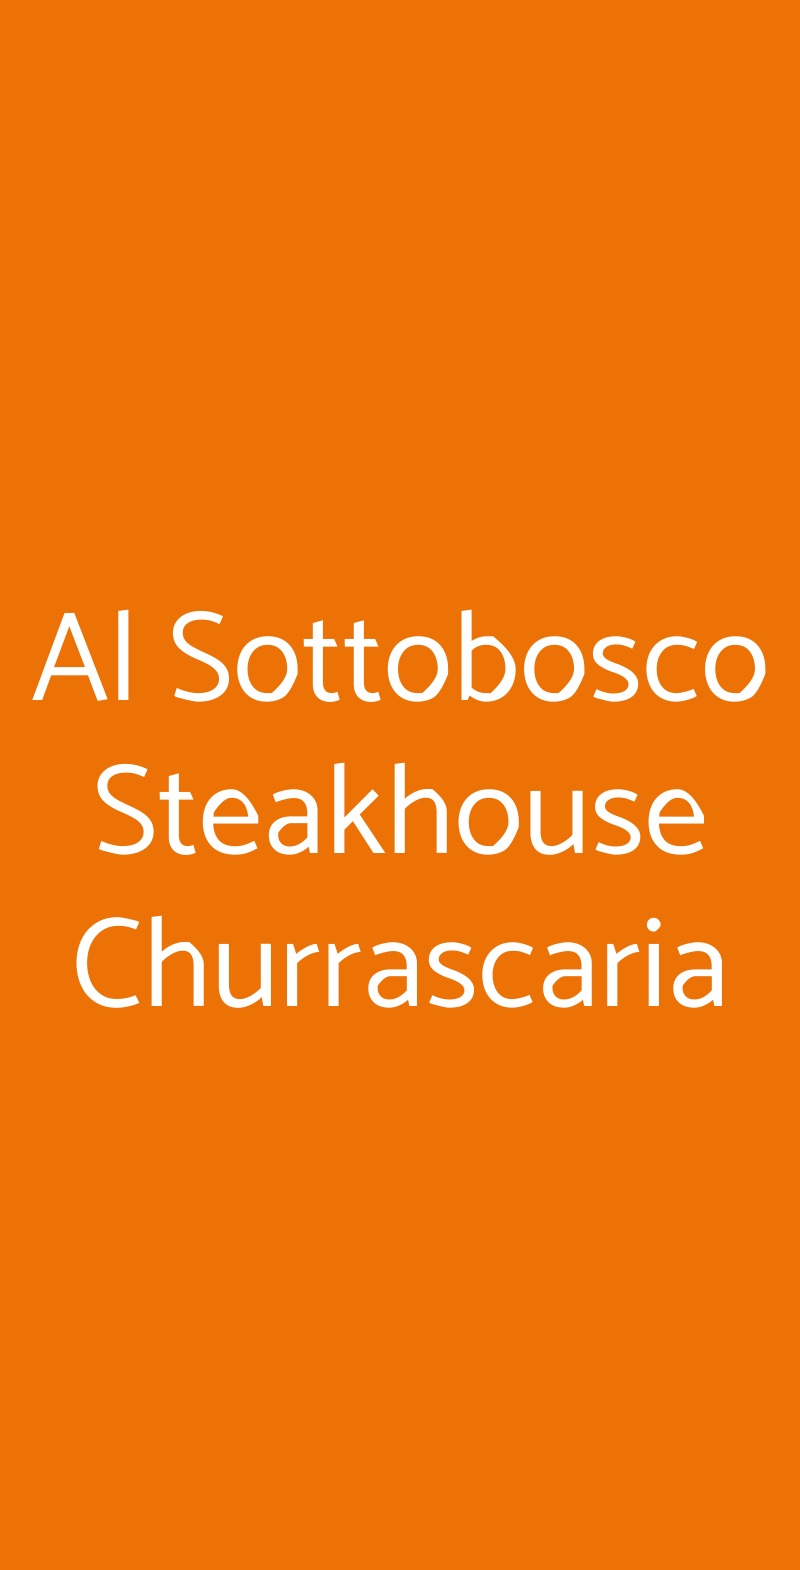 Al Sottobosco Steakhouse Churrascaria Pinzolo menù 1 pagina